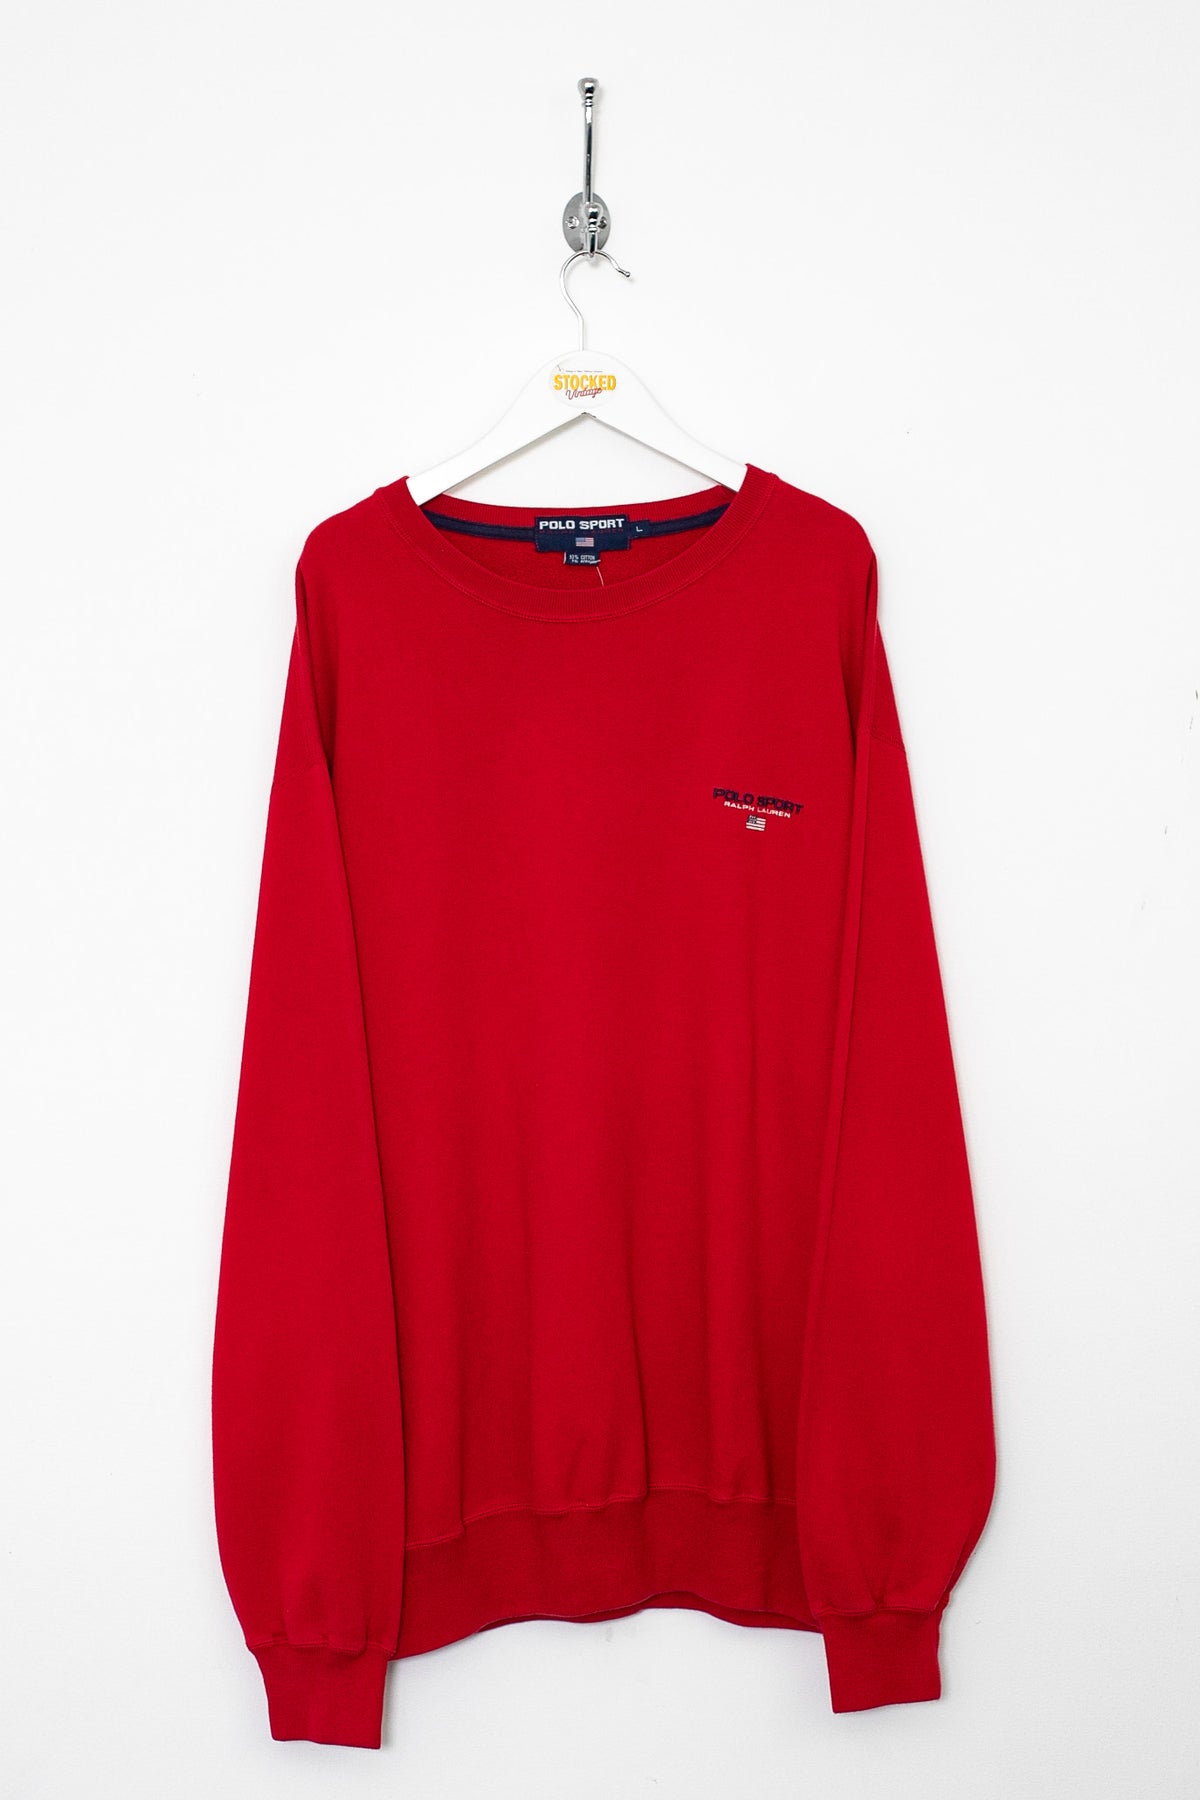 90s Ralph Lauren Polo Sport Sweatshirt (XL)